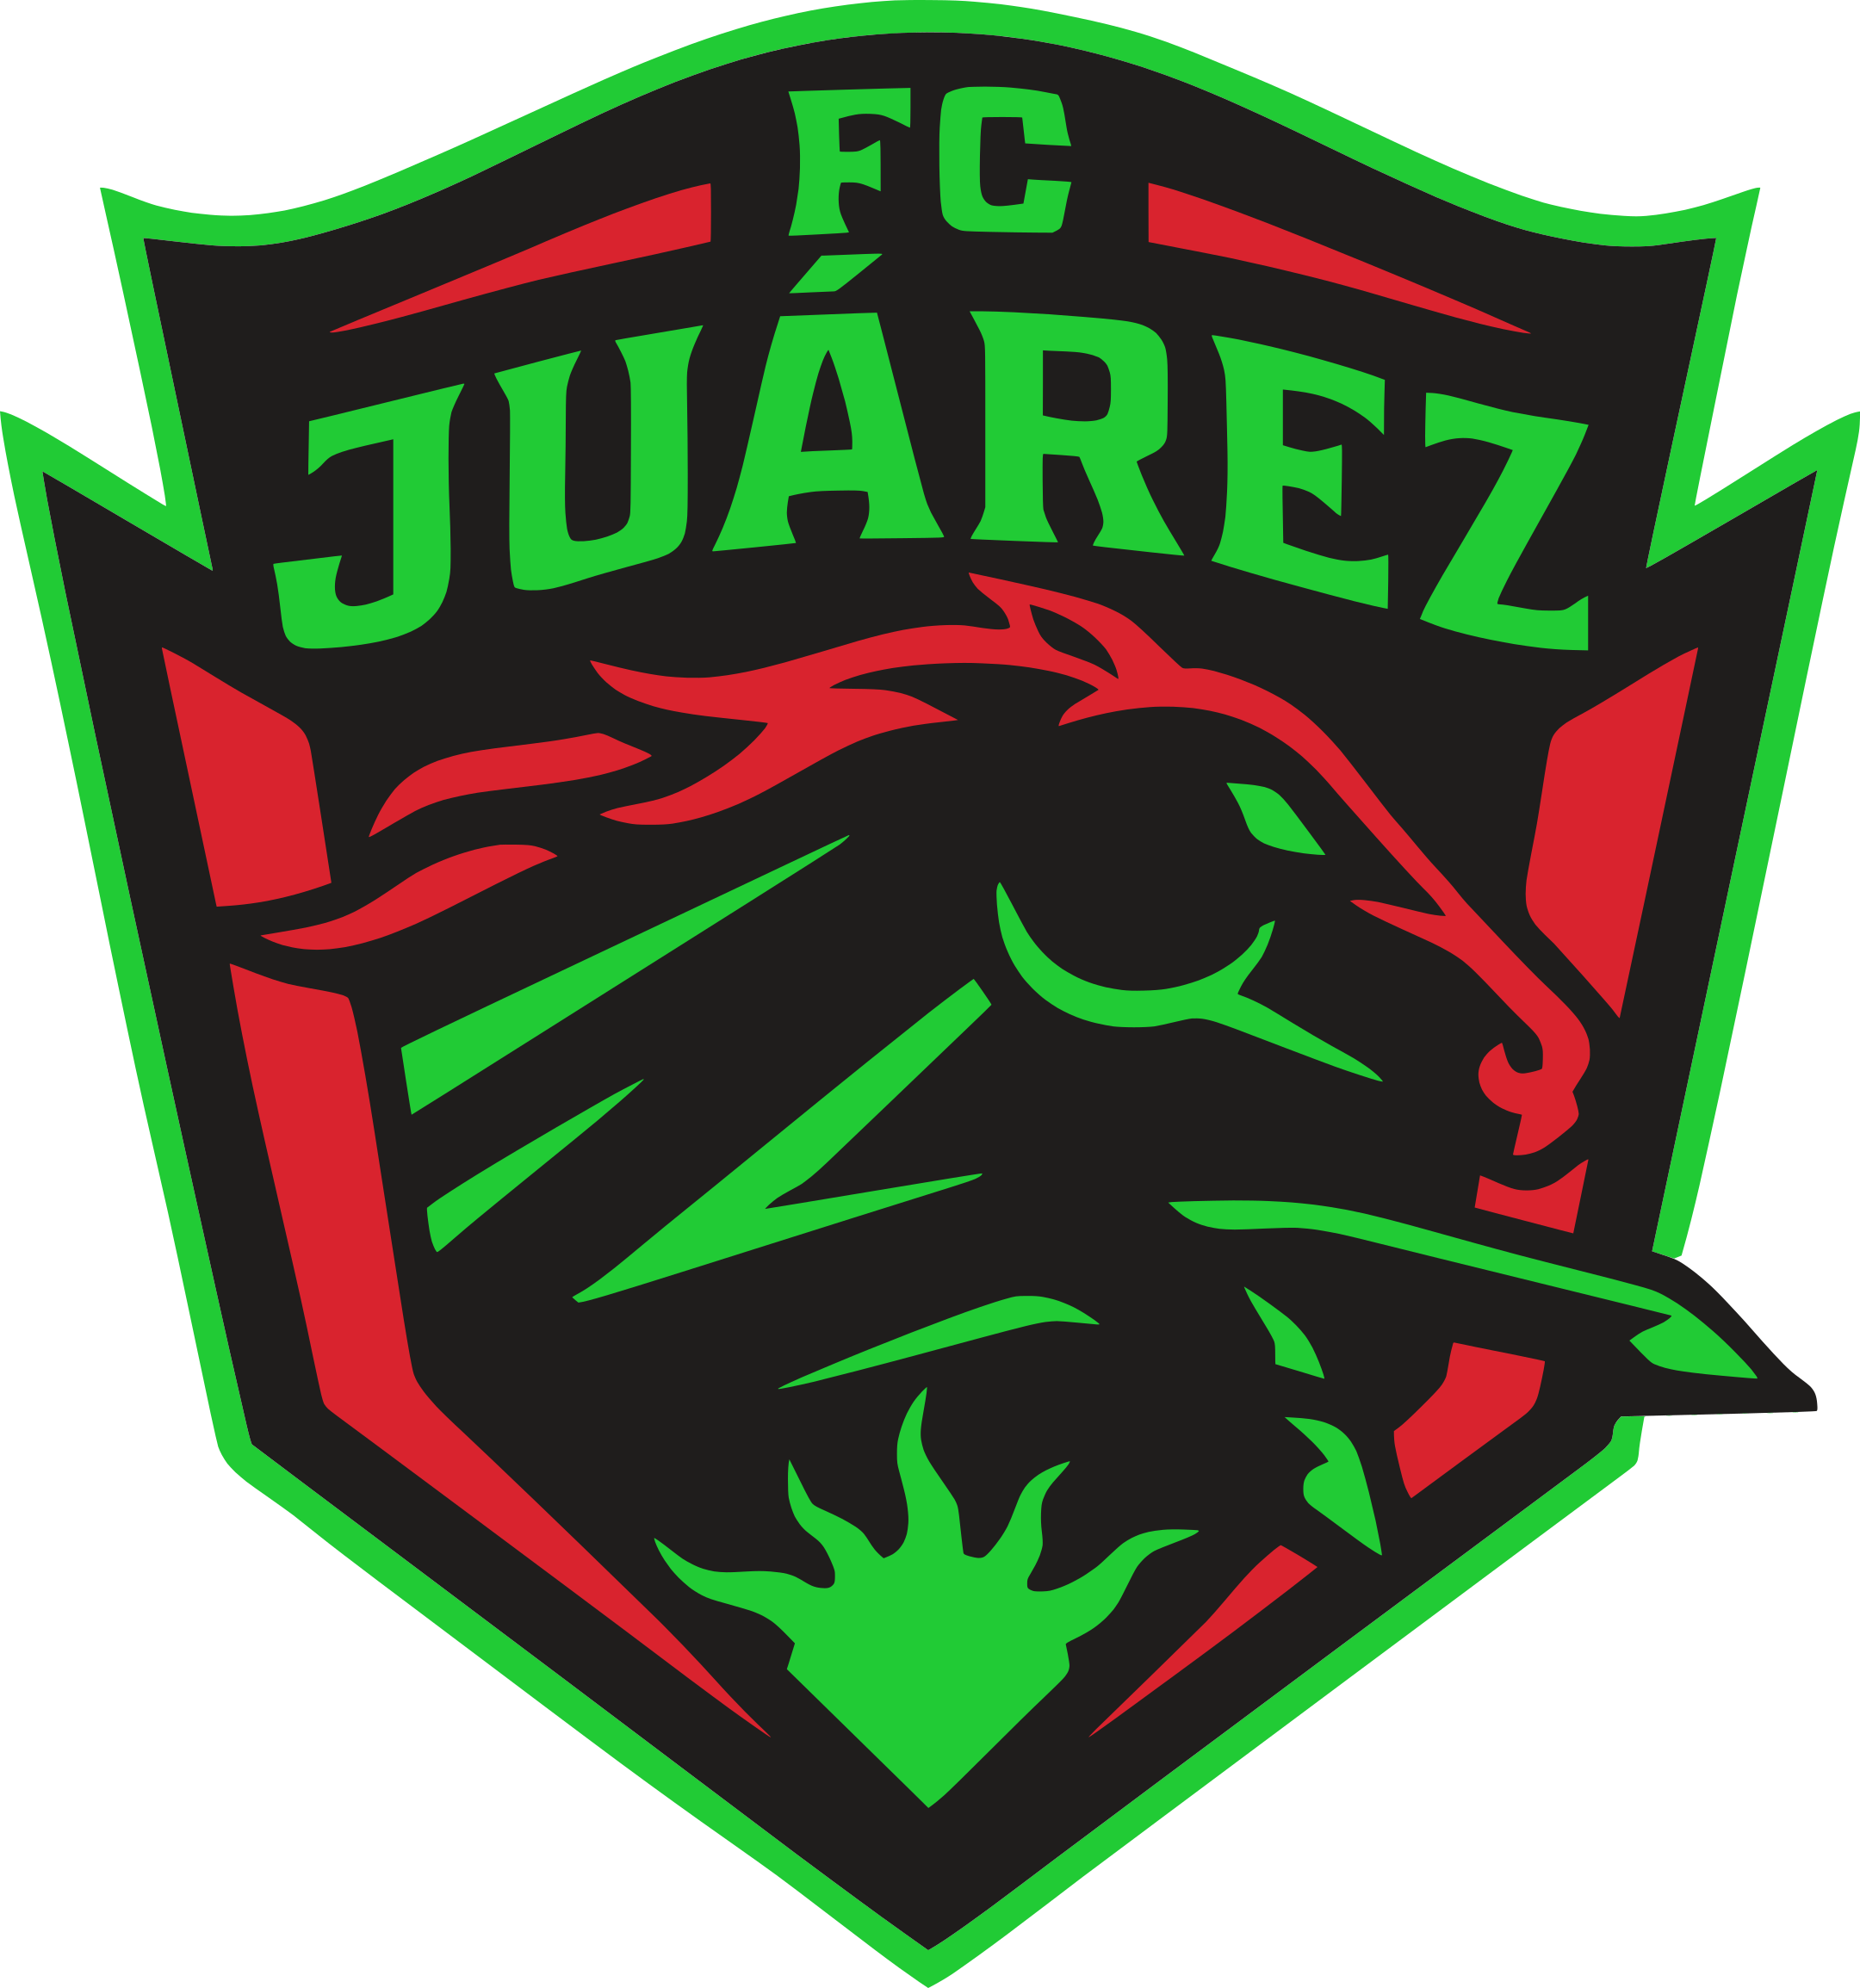 fc juarez logo 1 - FC Juárez Logo